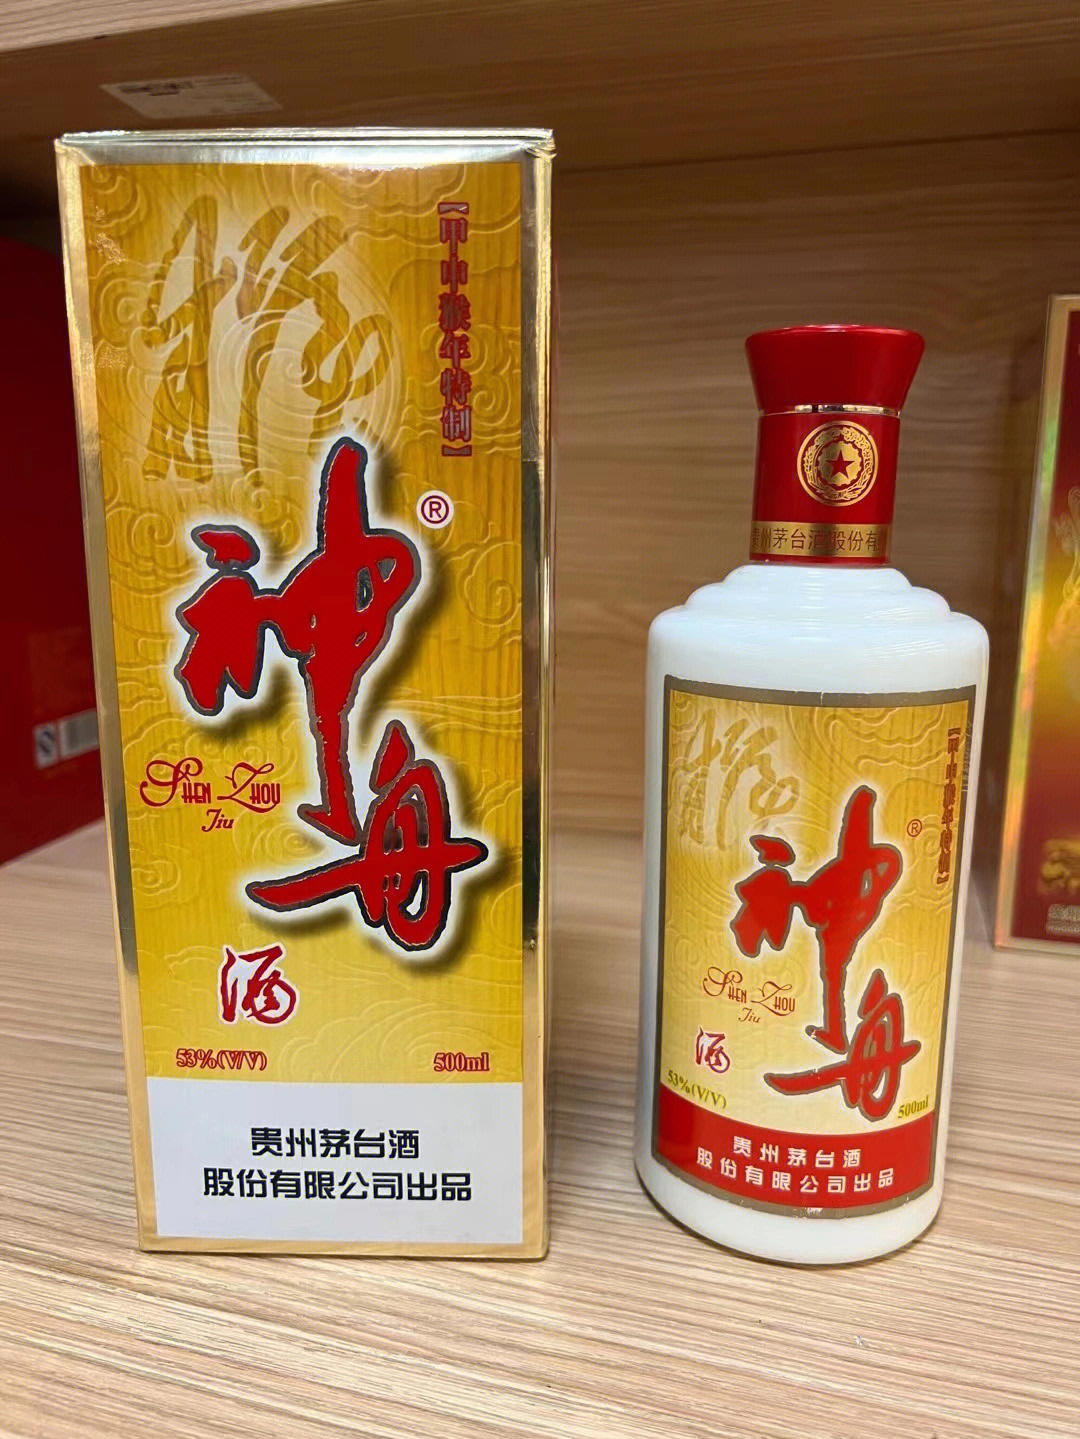 中石化神舟酒图片